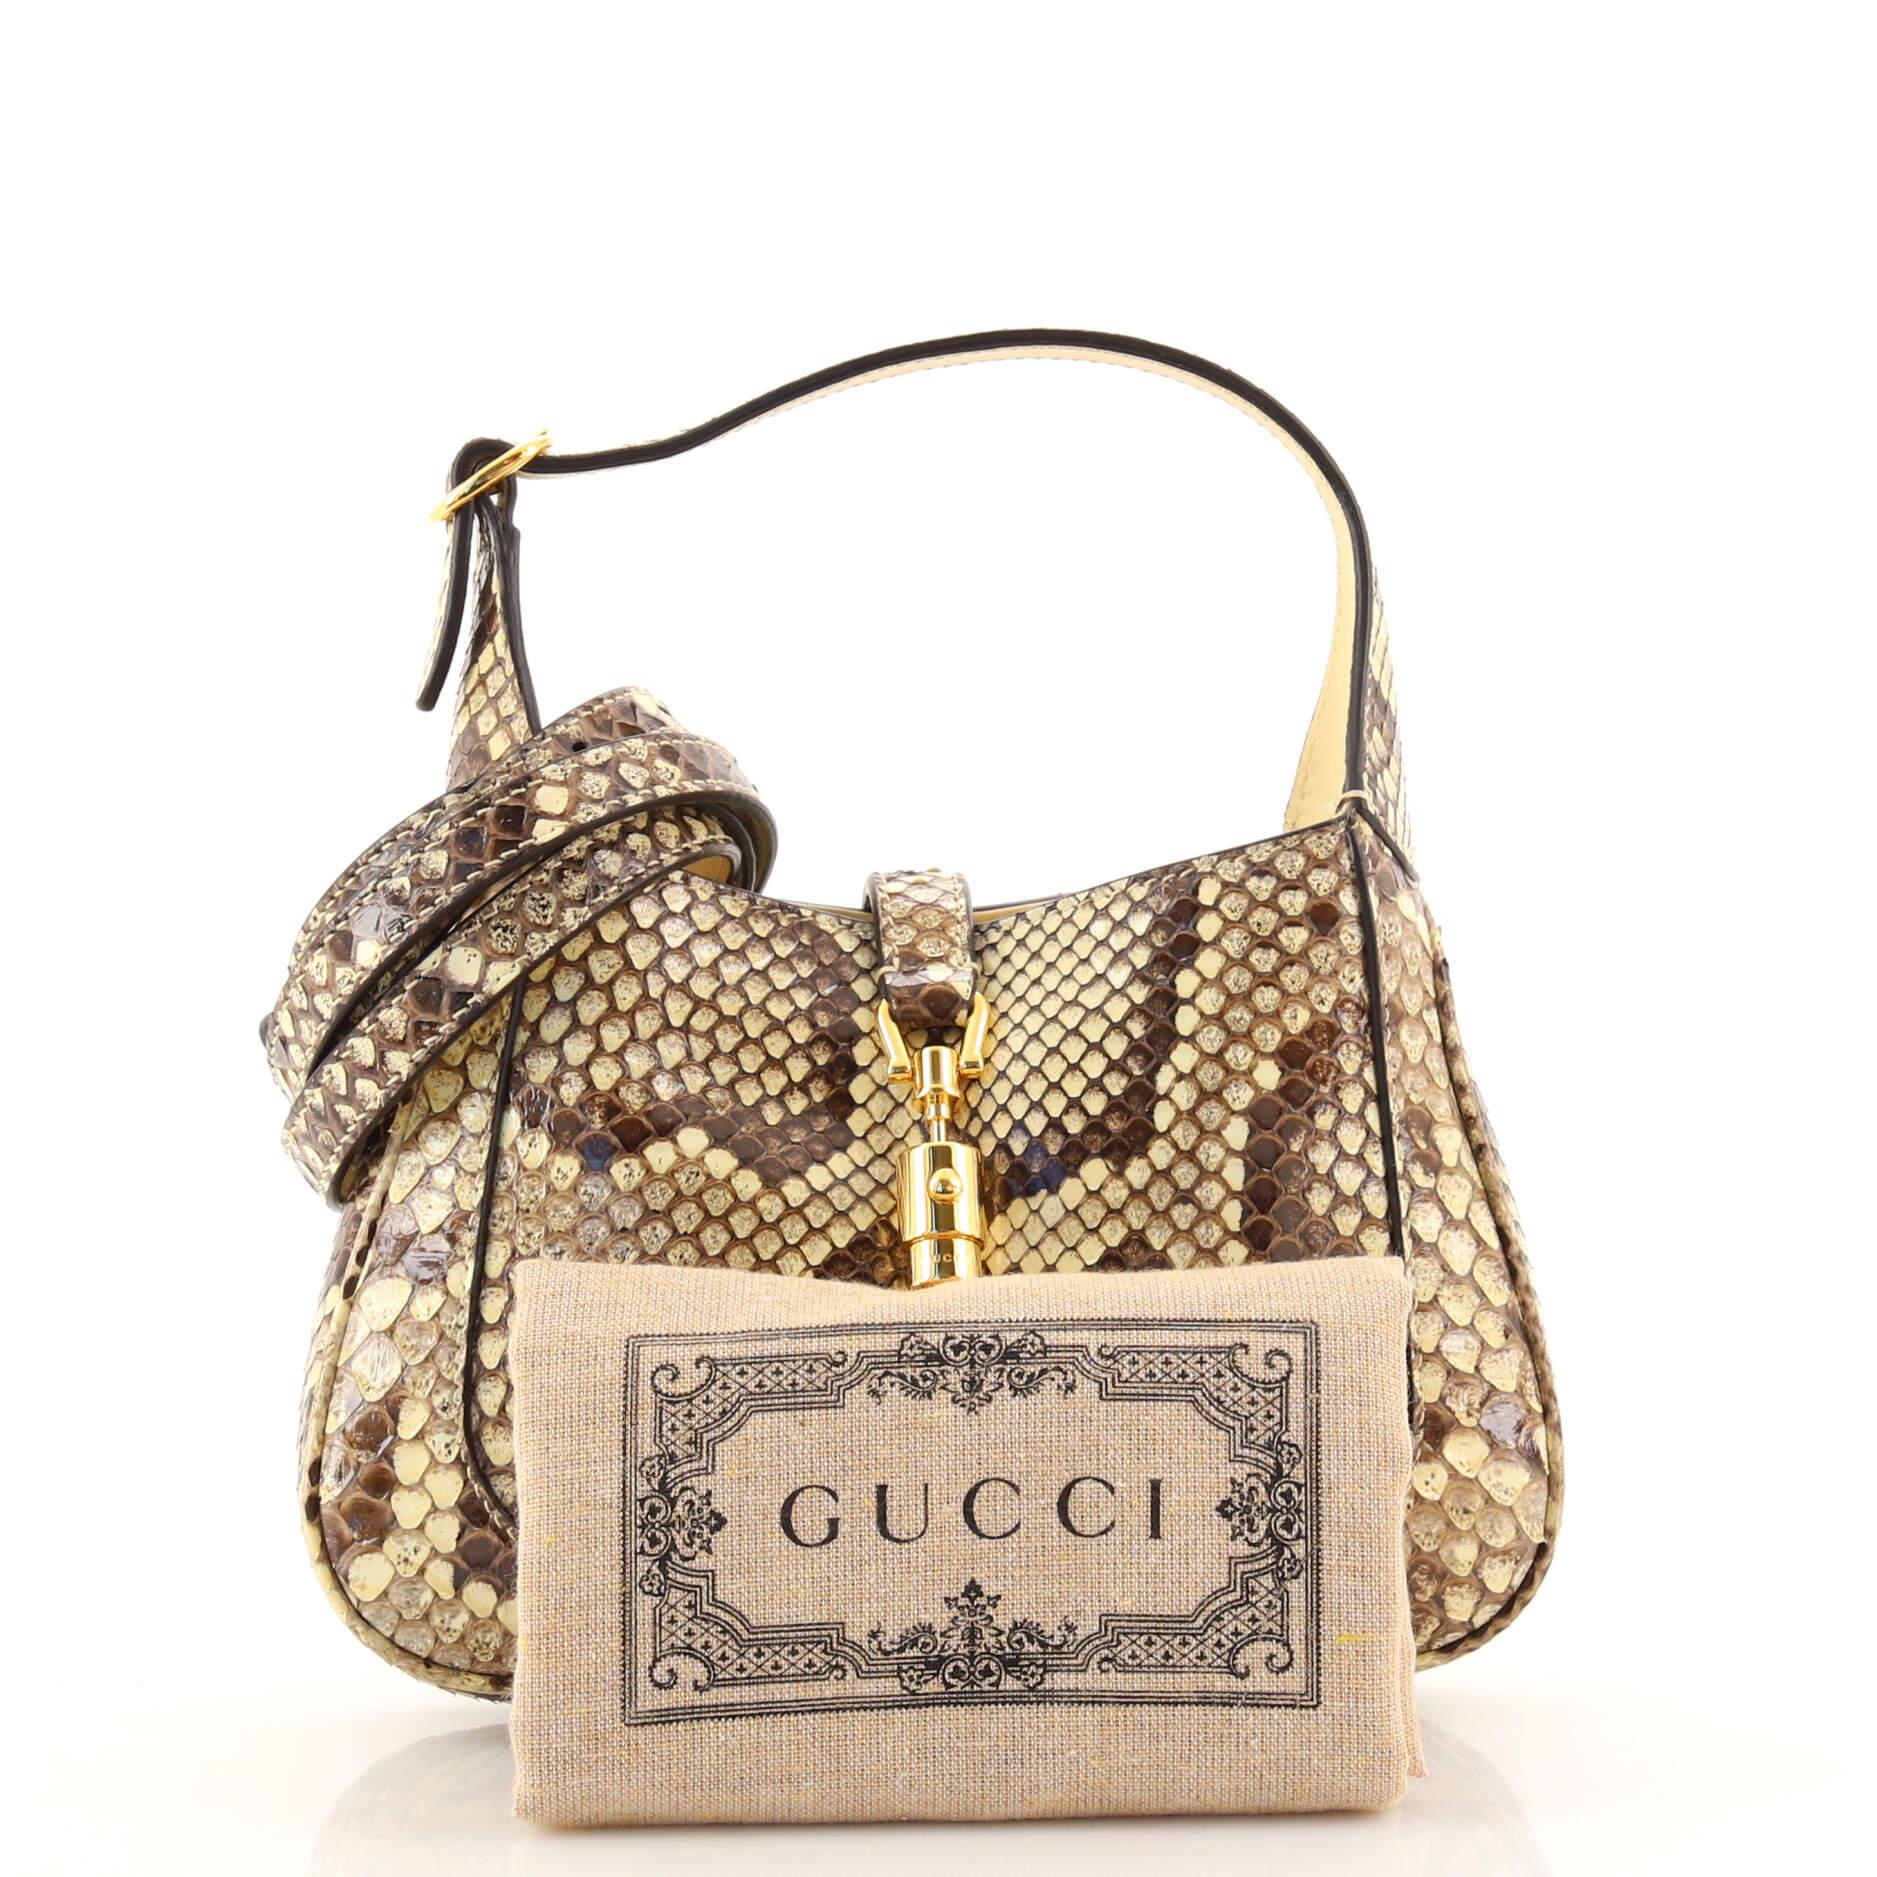 Gucci Jackie 1961 small crocodile bag